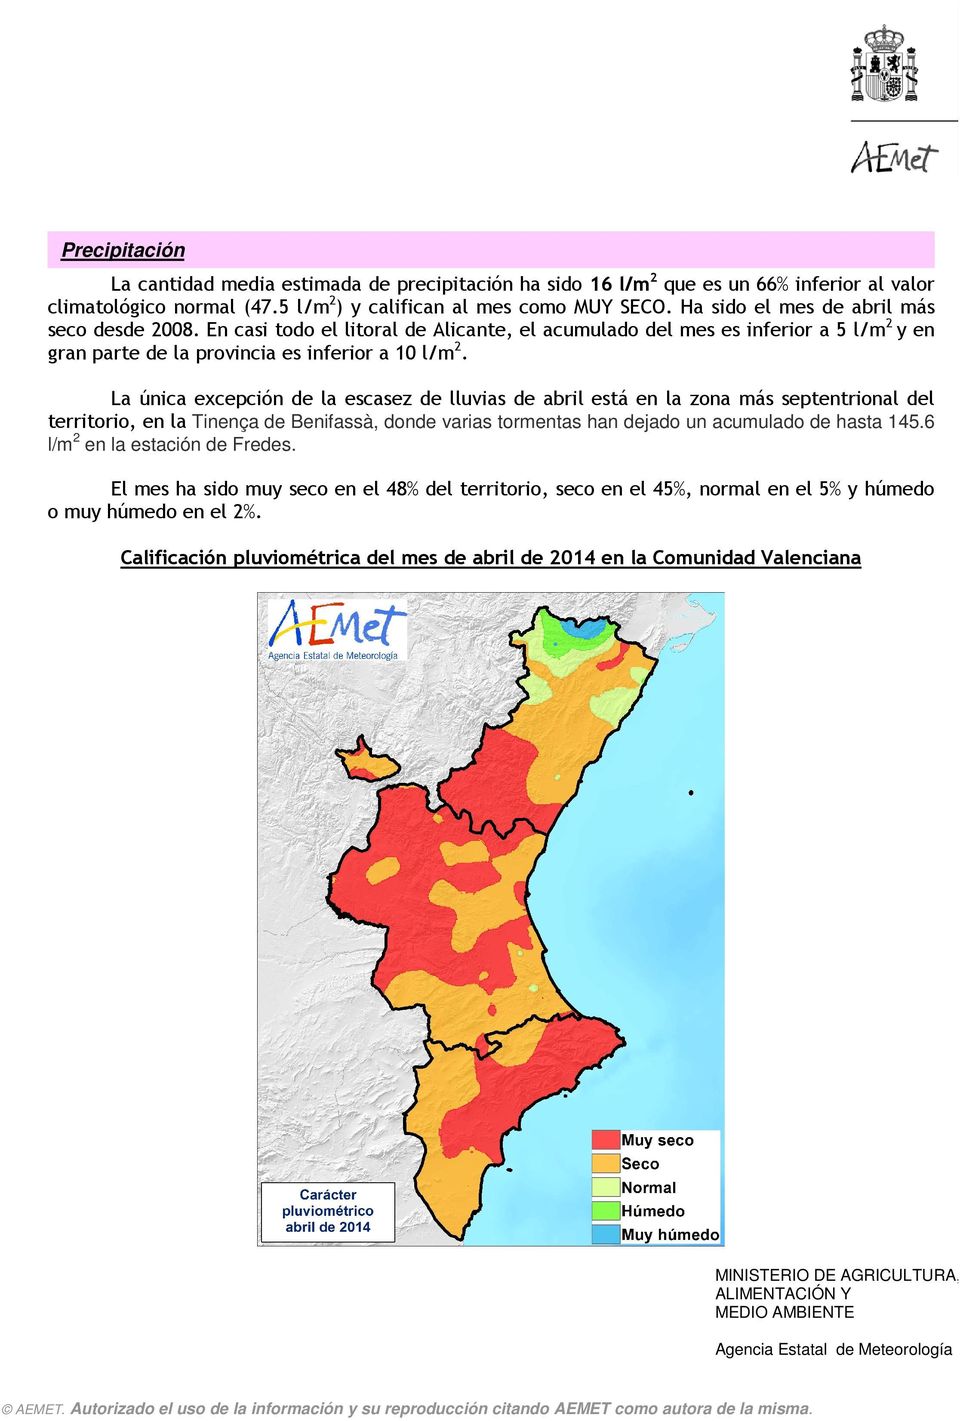 La única excepción de la escasez de lluvias de abril está en la zona más septentrional del territorio, en la Tinença de Benifassà, donde varias tormentas han dejado un acumulado de hasta 145.